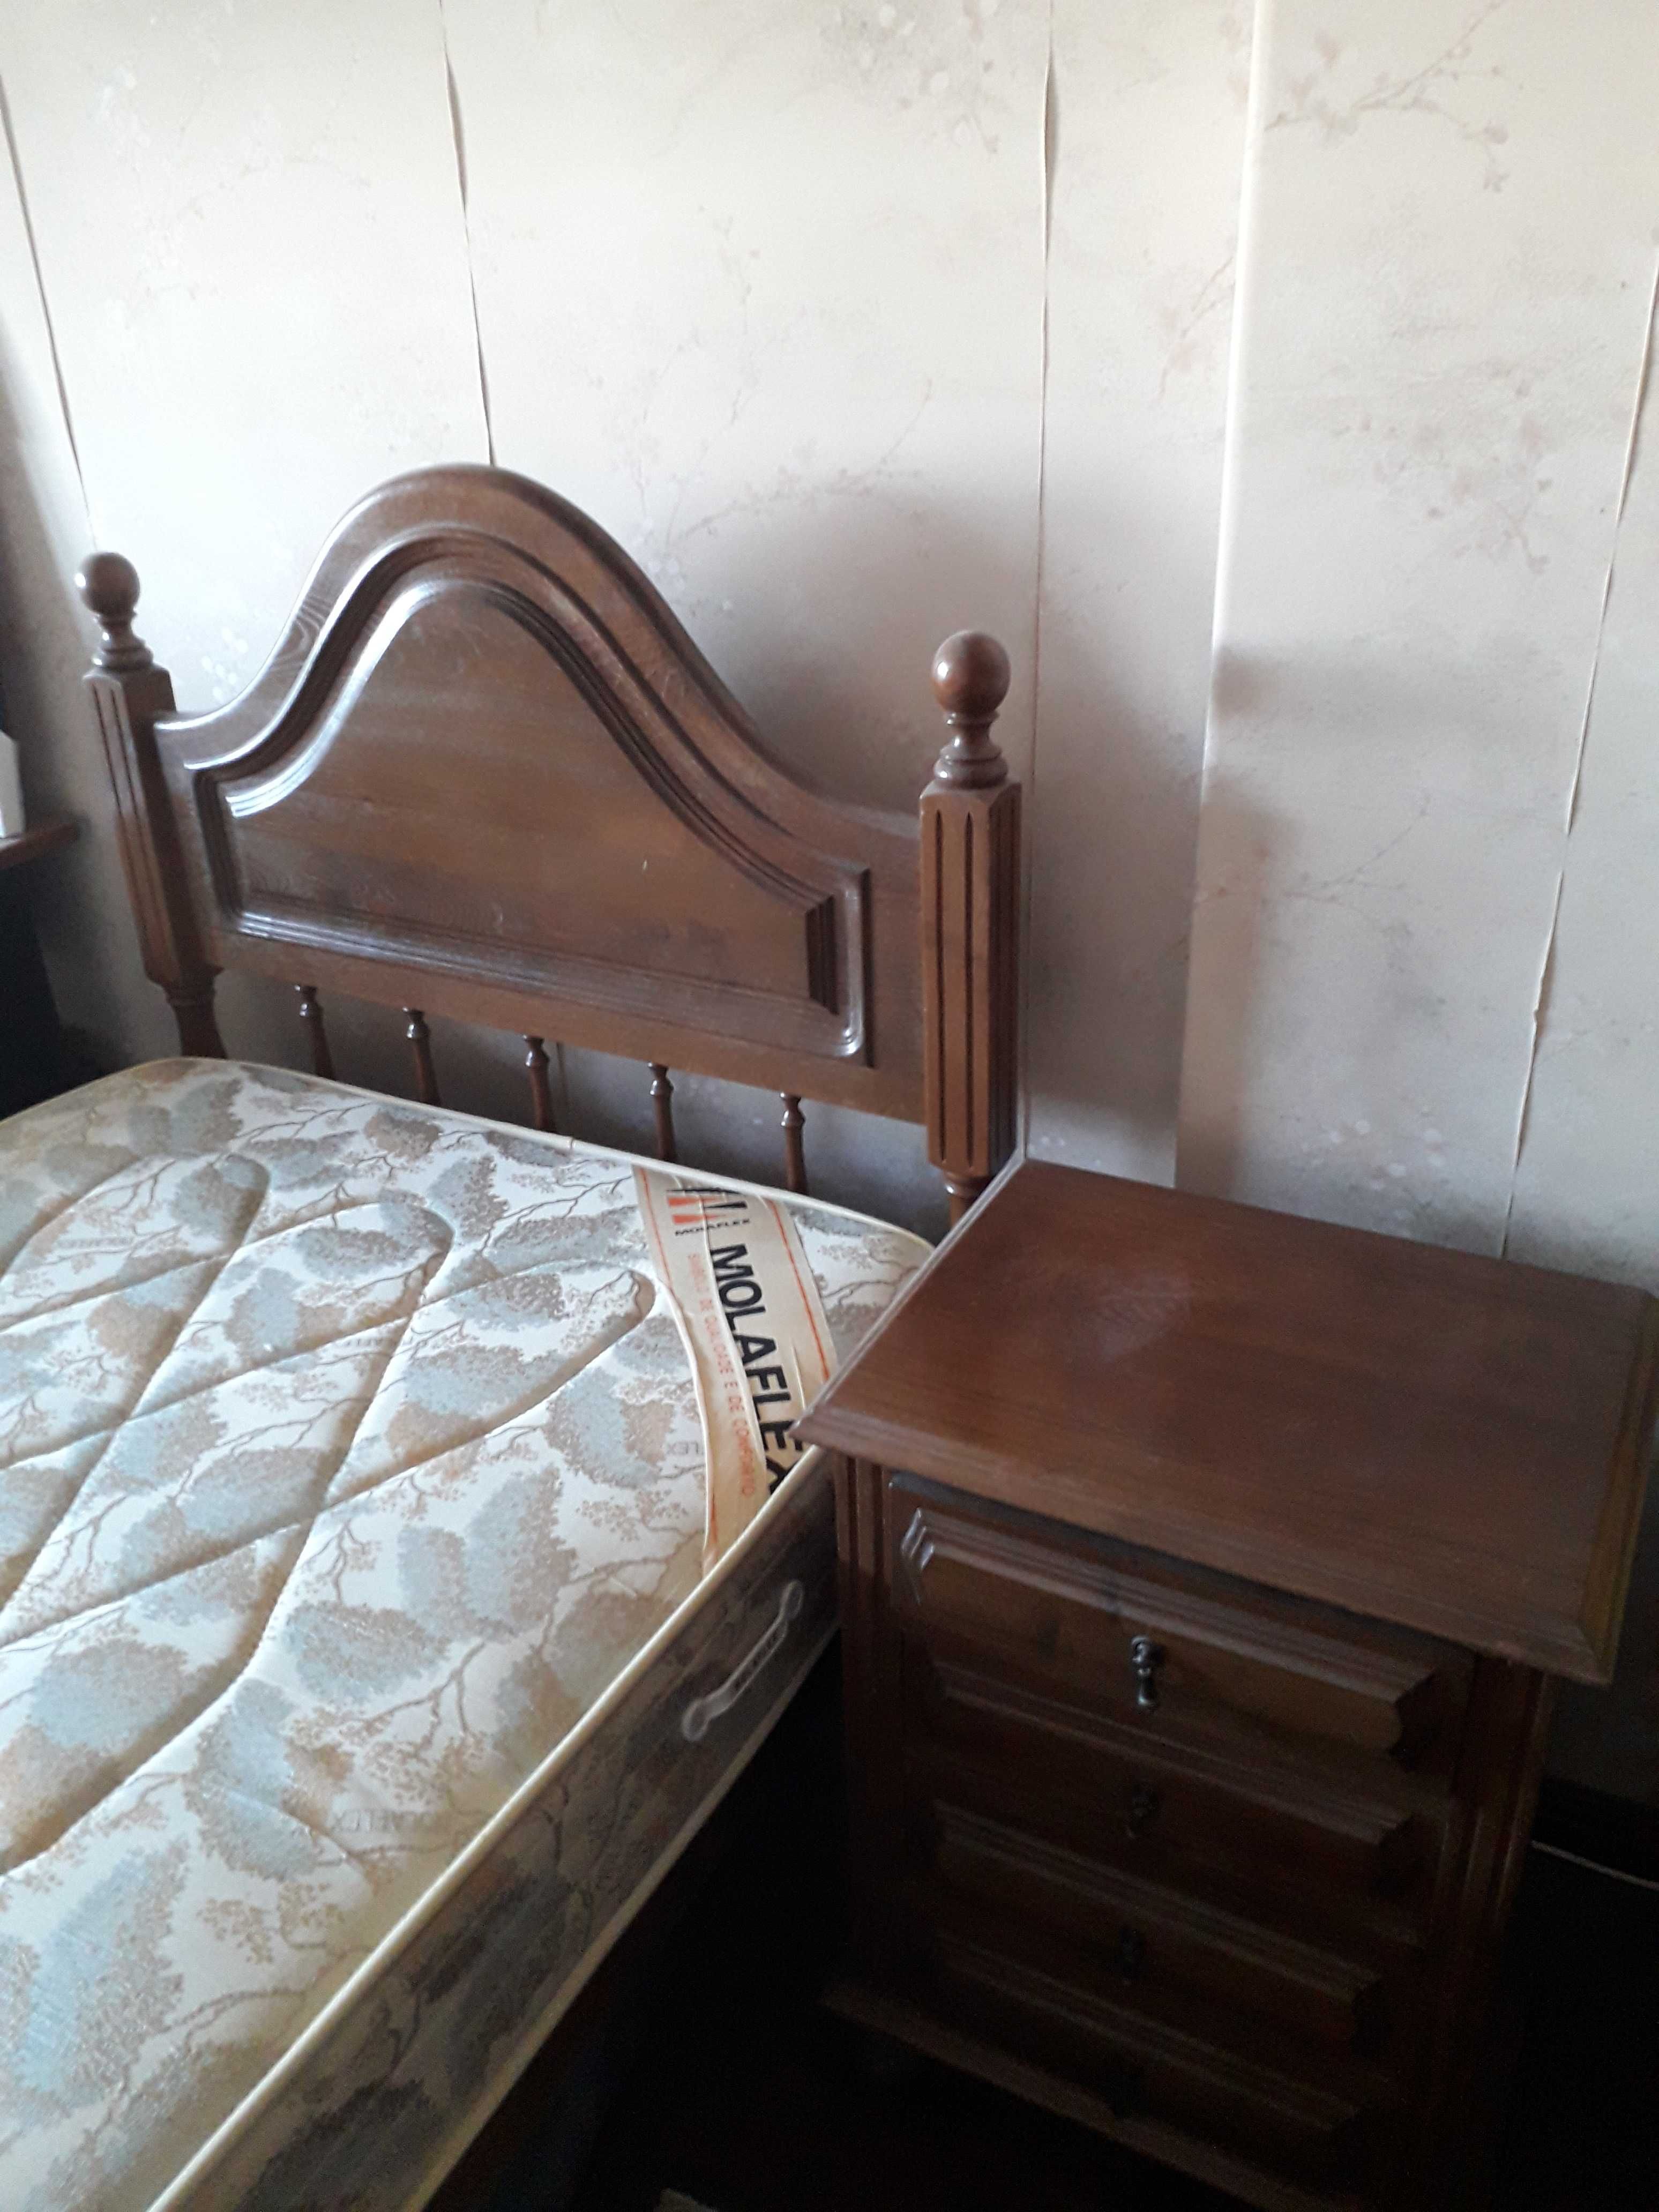 Cama solteiro de madeira, estrado, colchão, mesa de cabeceira